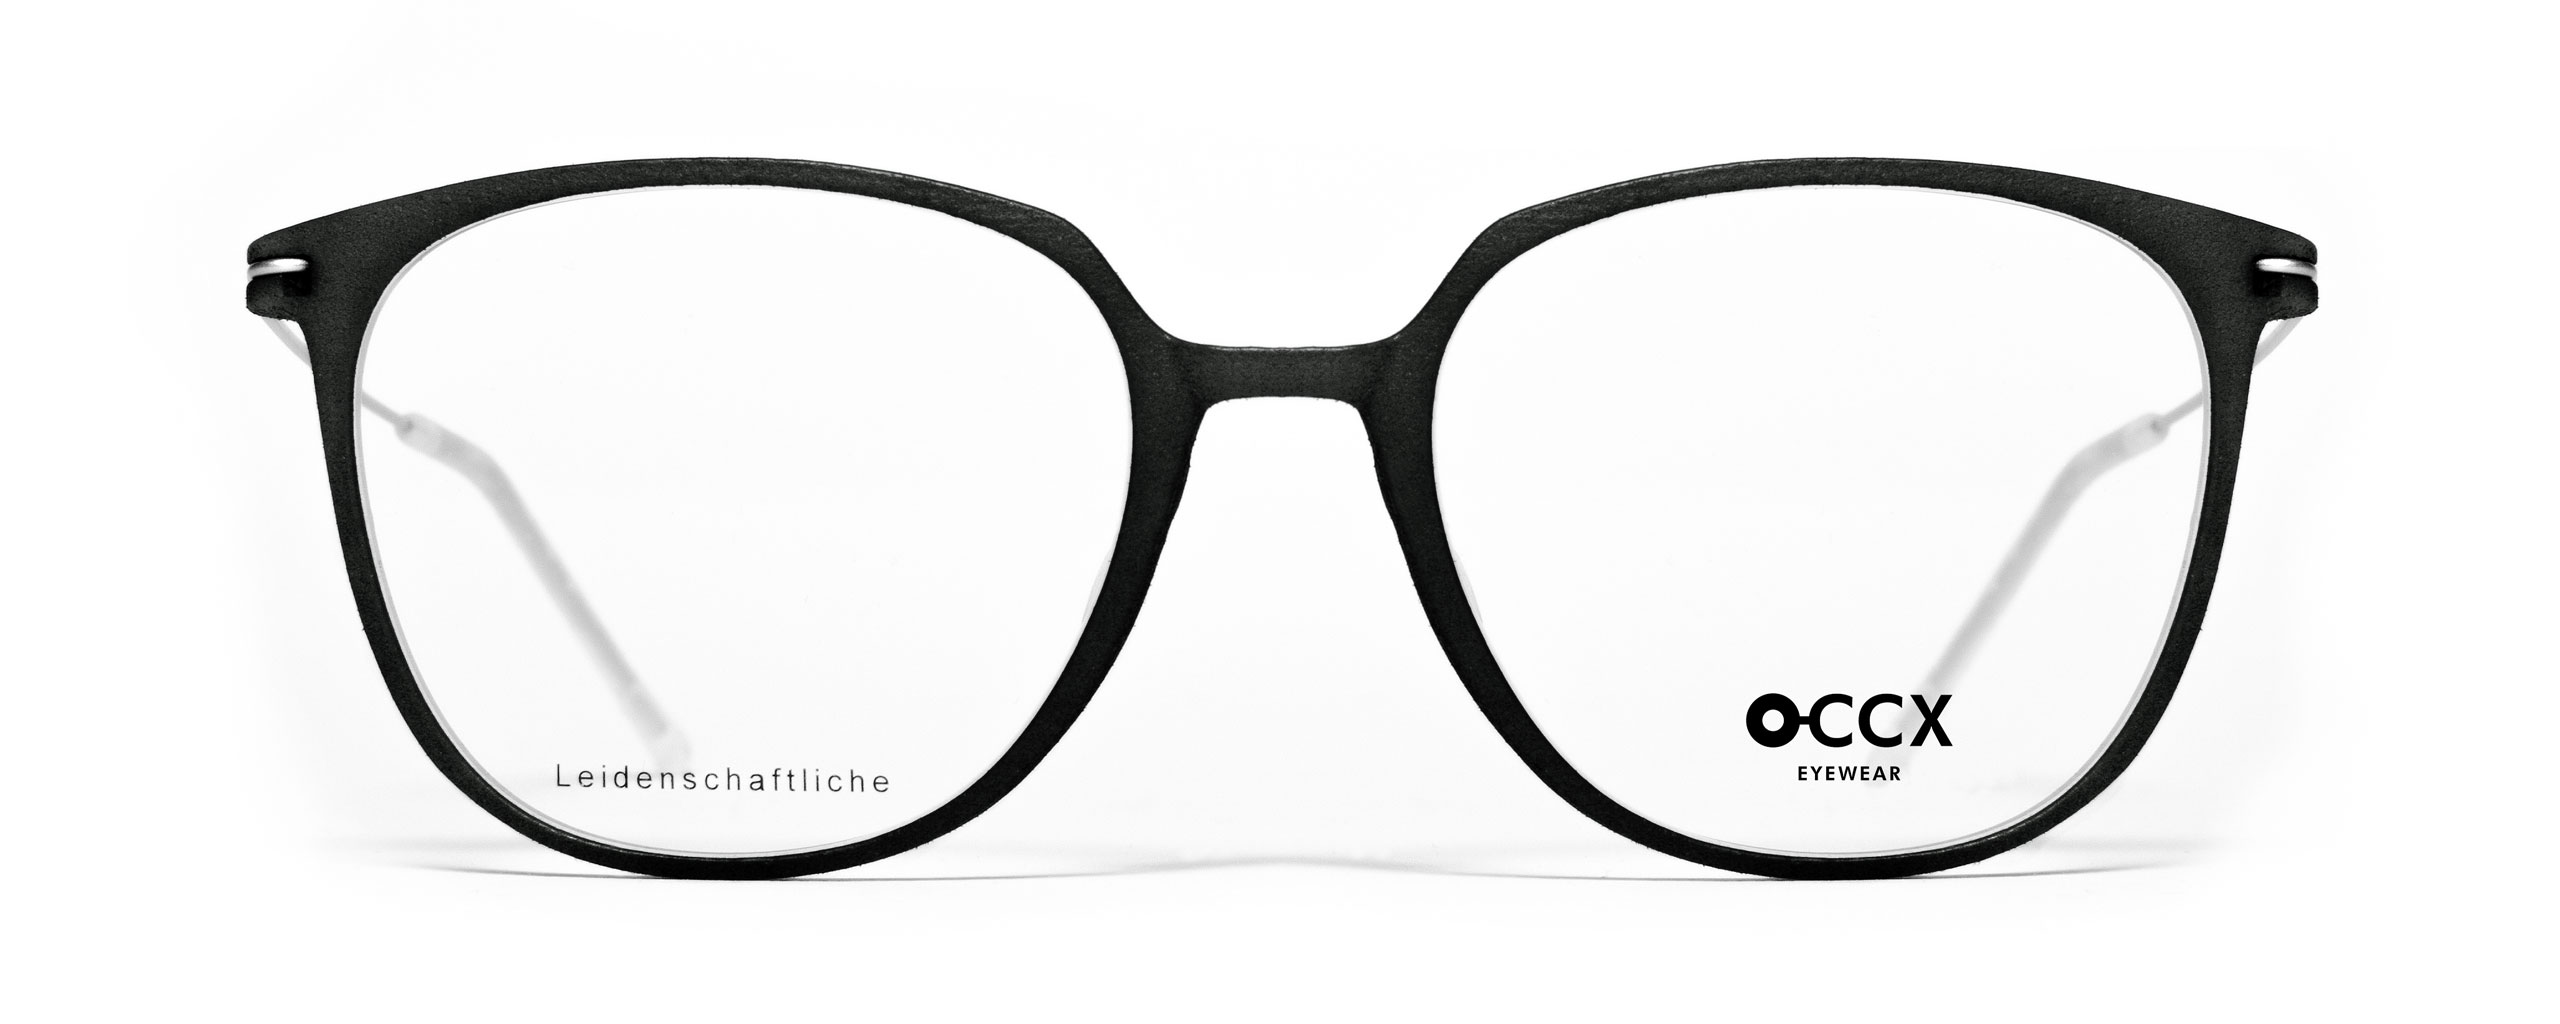 O-CCX Eyewear Slim Leidenschaftliche schiefer